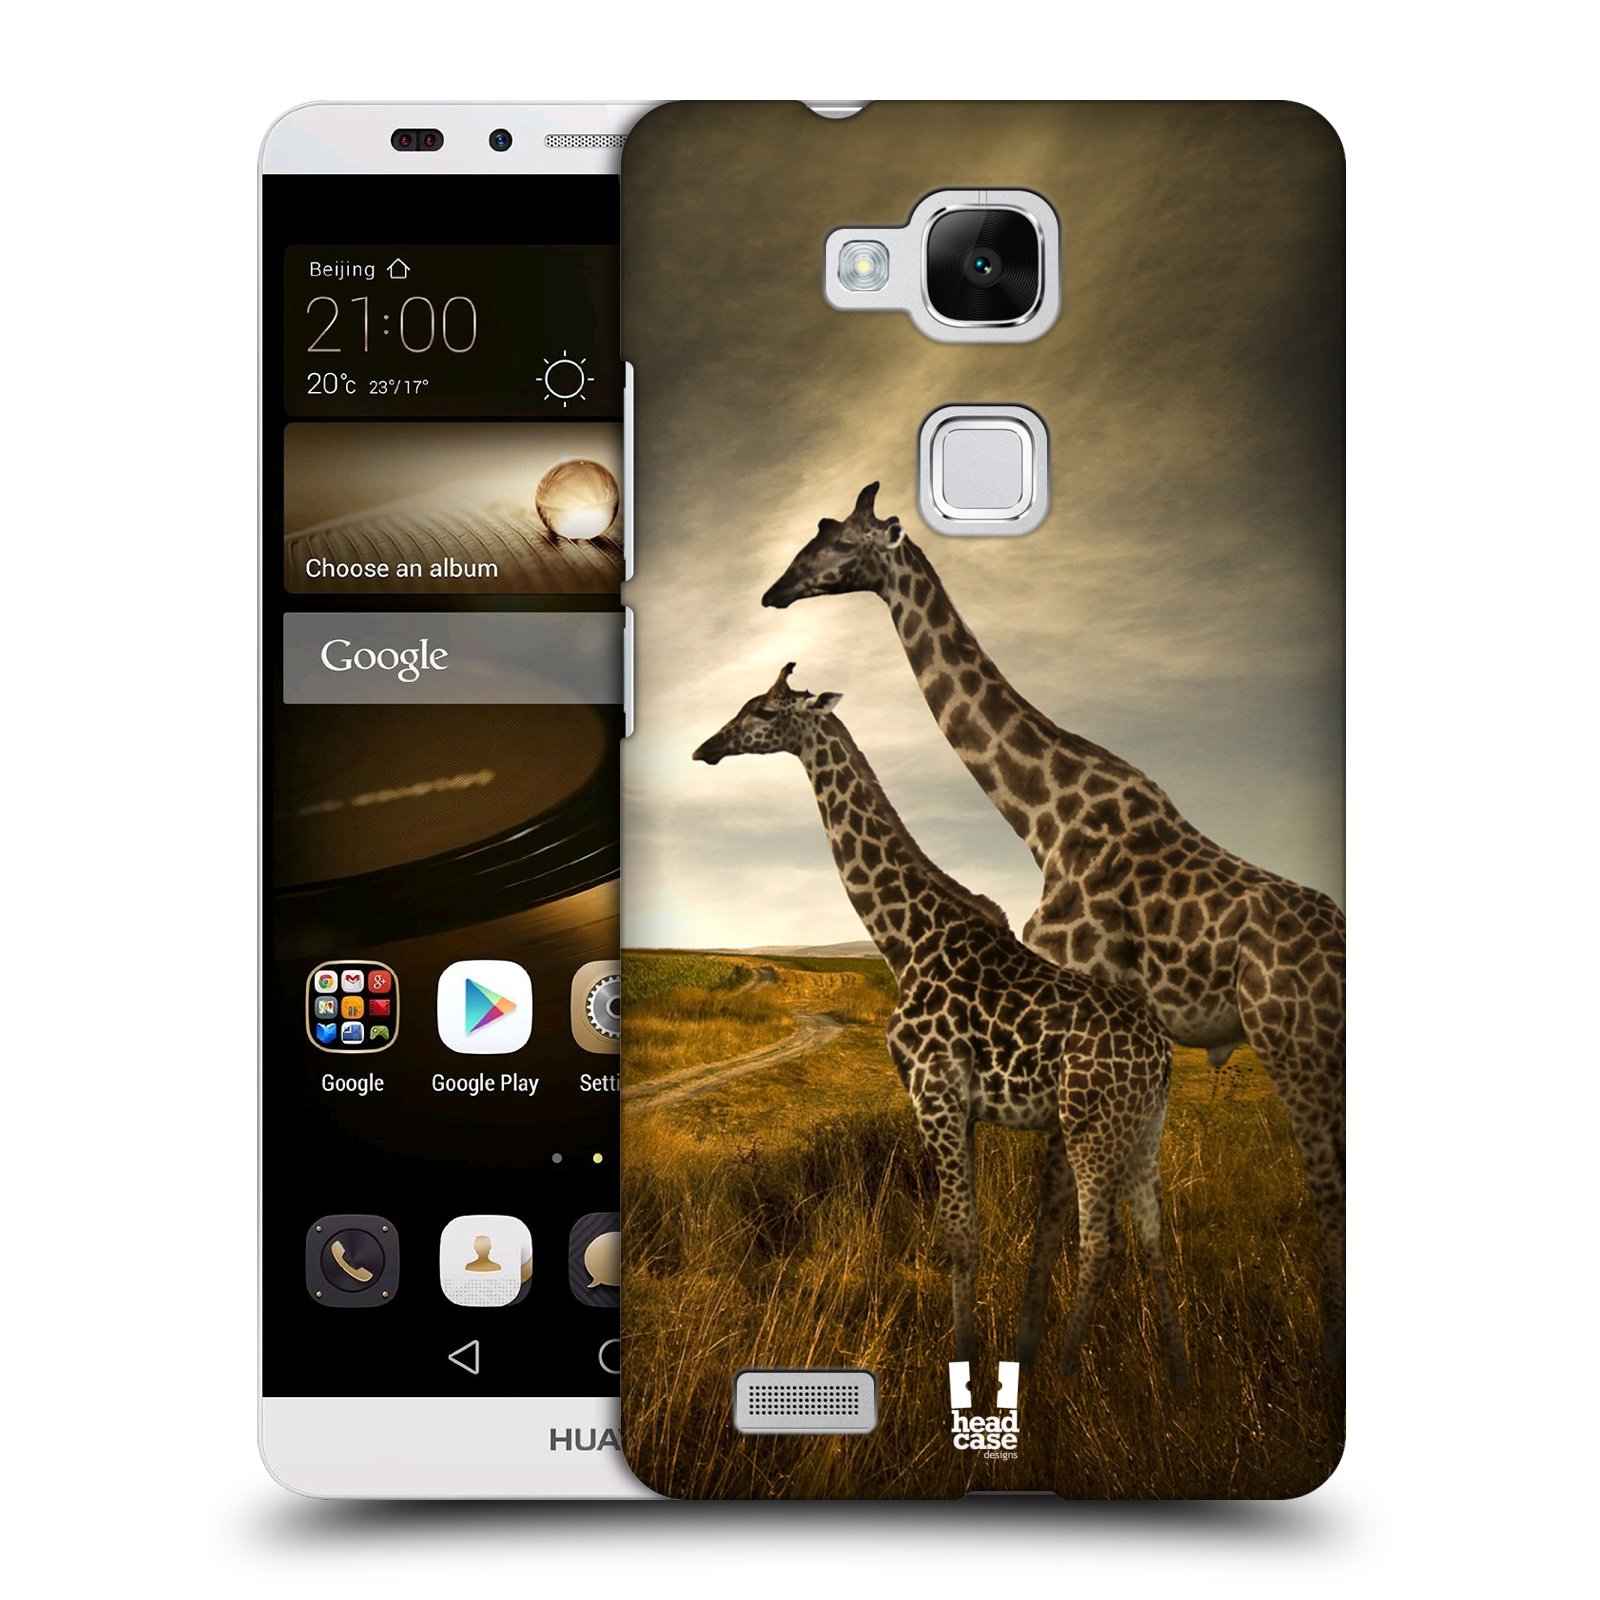 HEAD CASE plastový obal na mobil Huawei Mate 7 vzor Divočina, Divoký život a zvířata foto AFRIKA ŽIRAFY VÝHLED